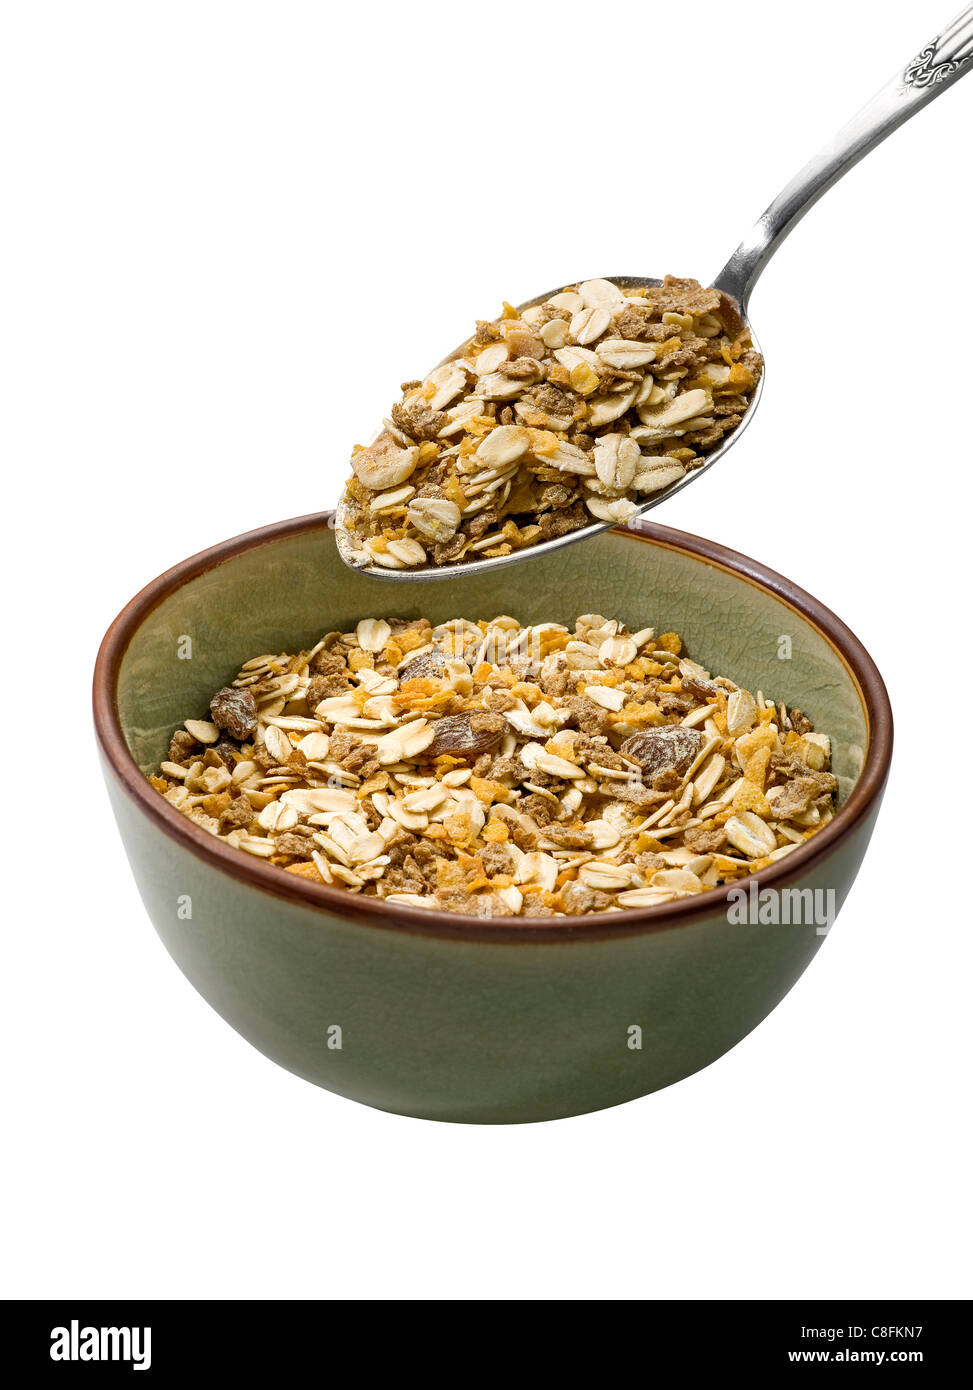 Bowl of muesli on white background Stock Photo